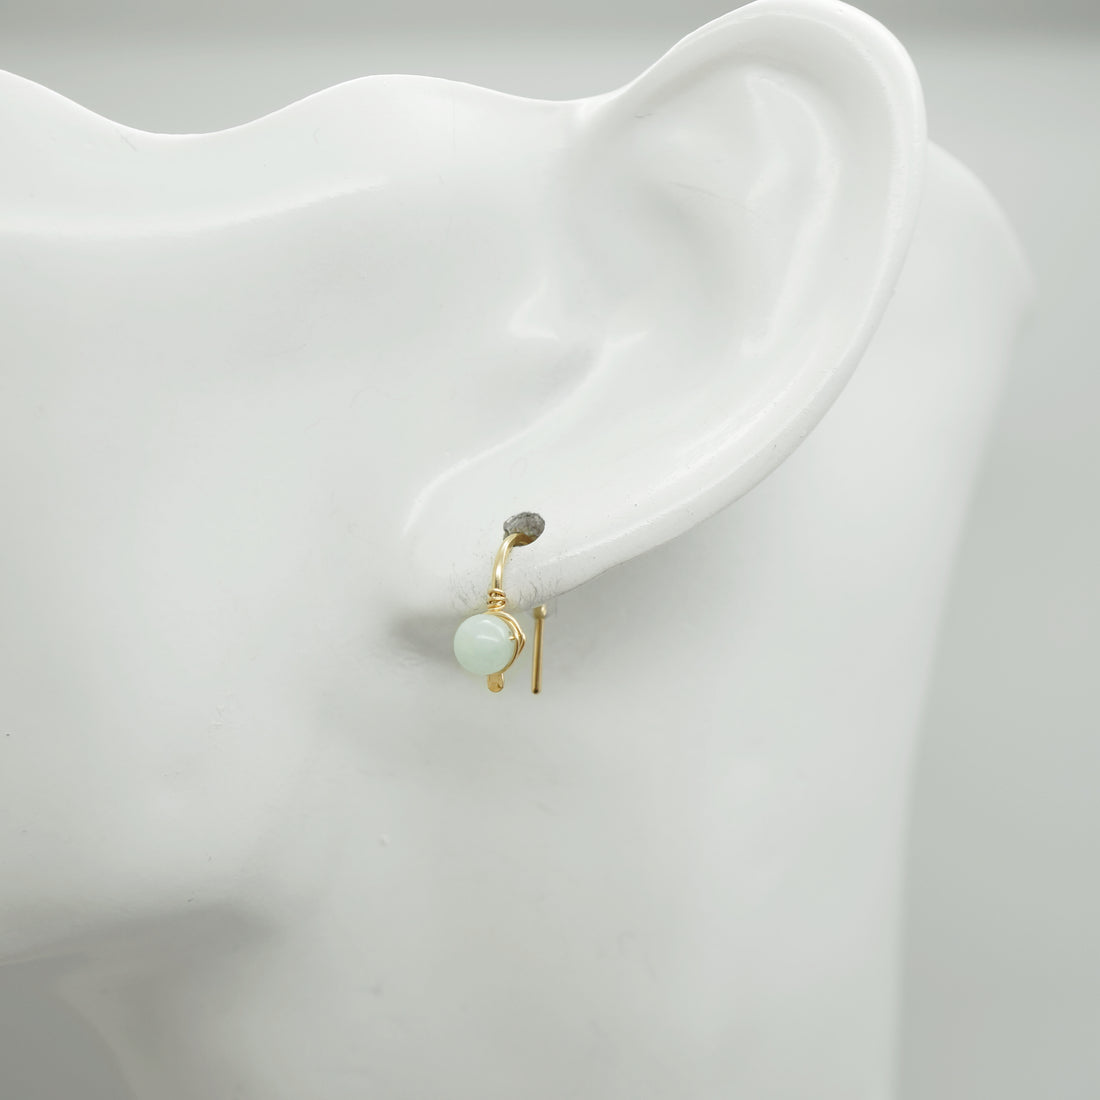 Kleine gold filled oorbellen met aquamarijn - 14k gold filled